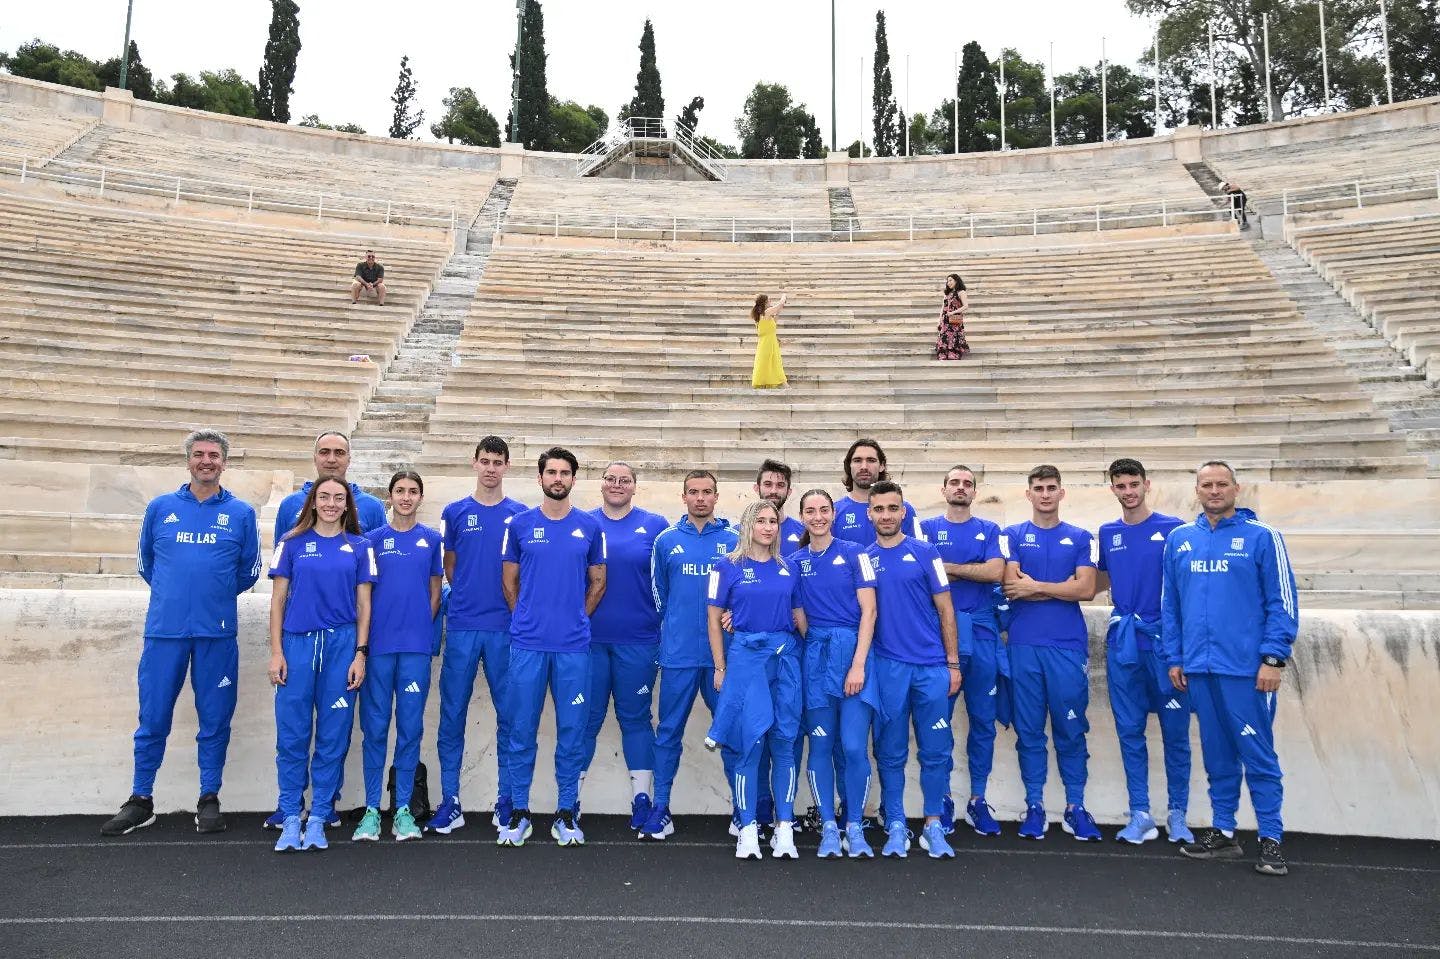 Πραγματοποιήθηκε η φωτογράφιση της Team Hellas για τους Ευρωπαϊκούς Αγώνες (Pics)